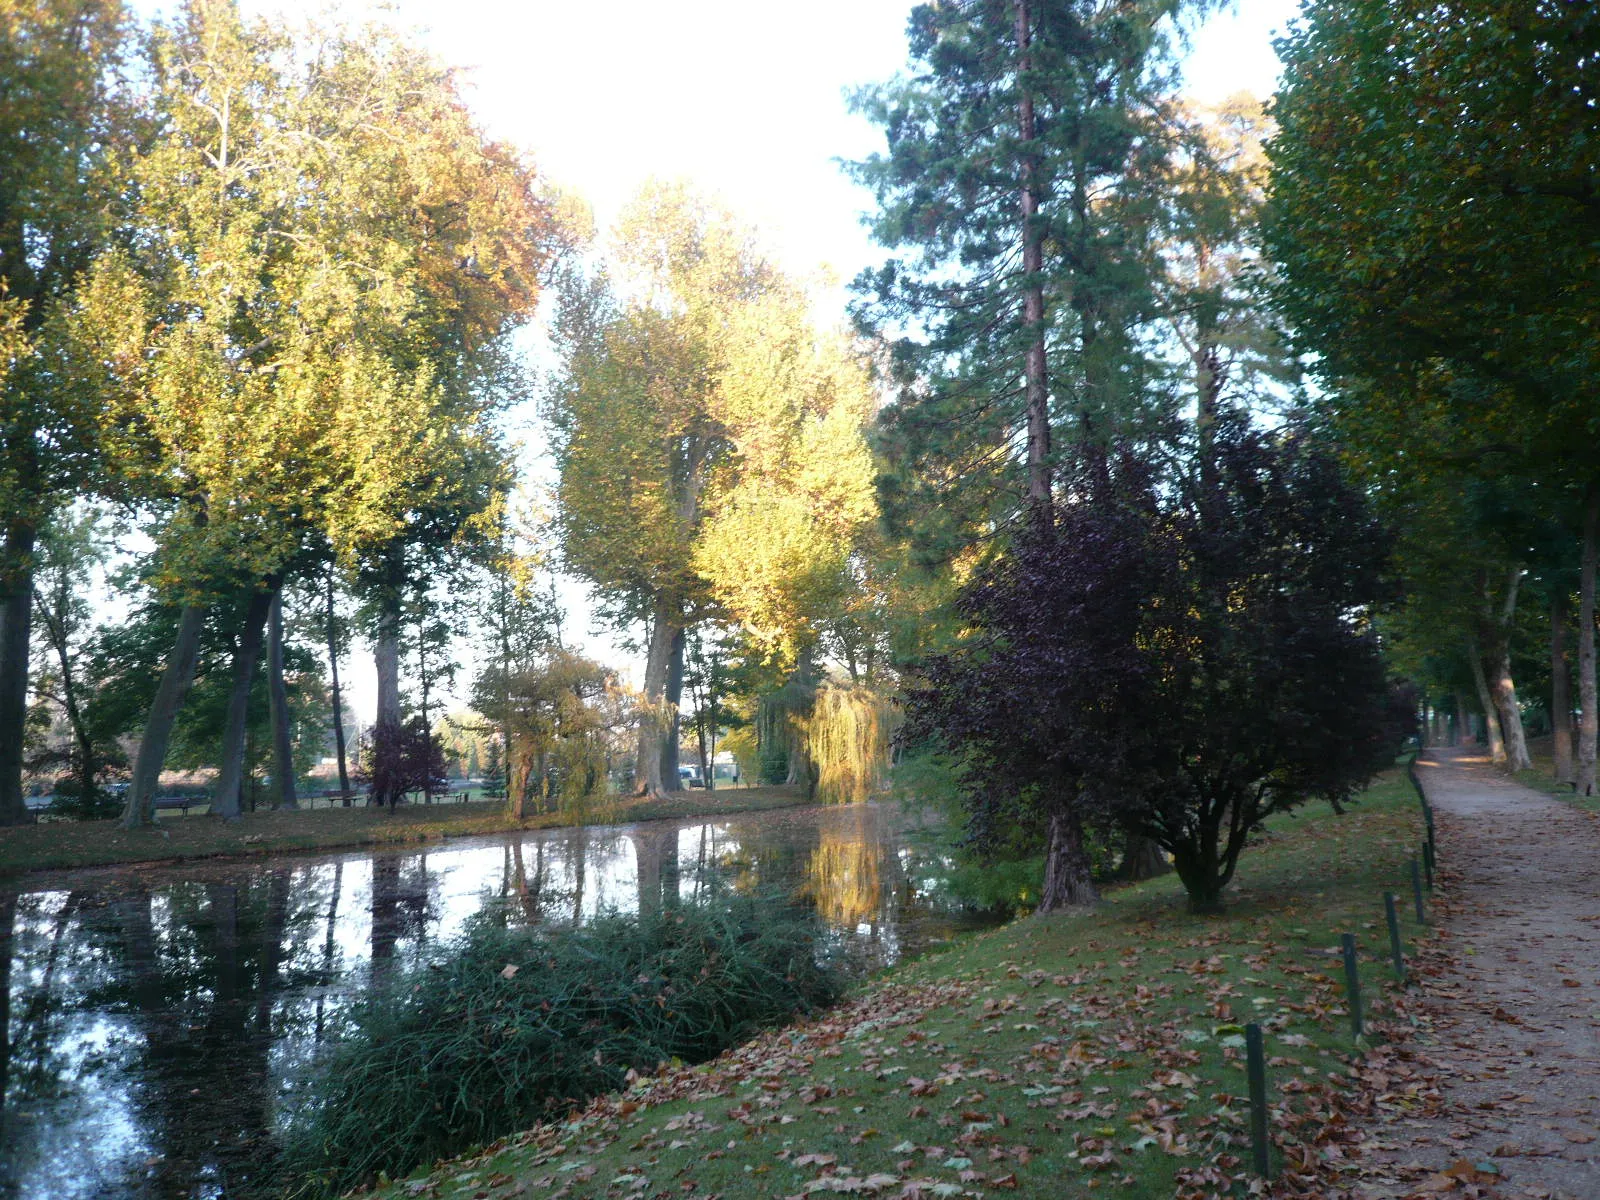 Photo showing: Pièce d'eau, cyprès chauves et allée du parc Meissonier.